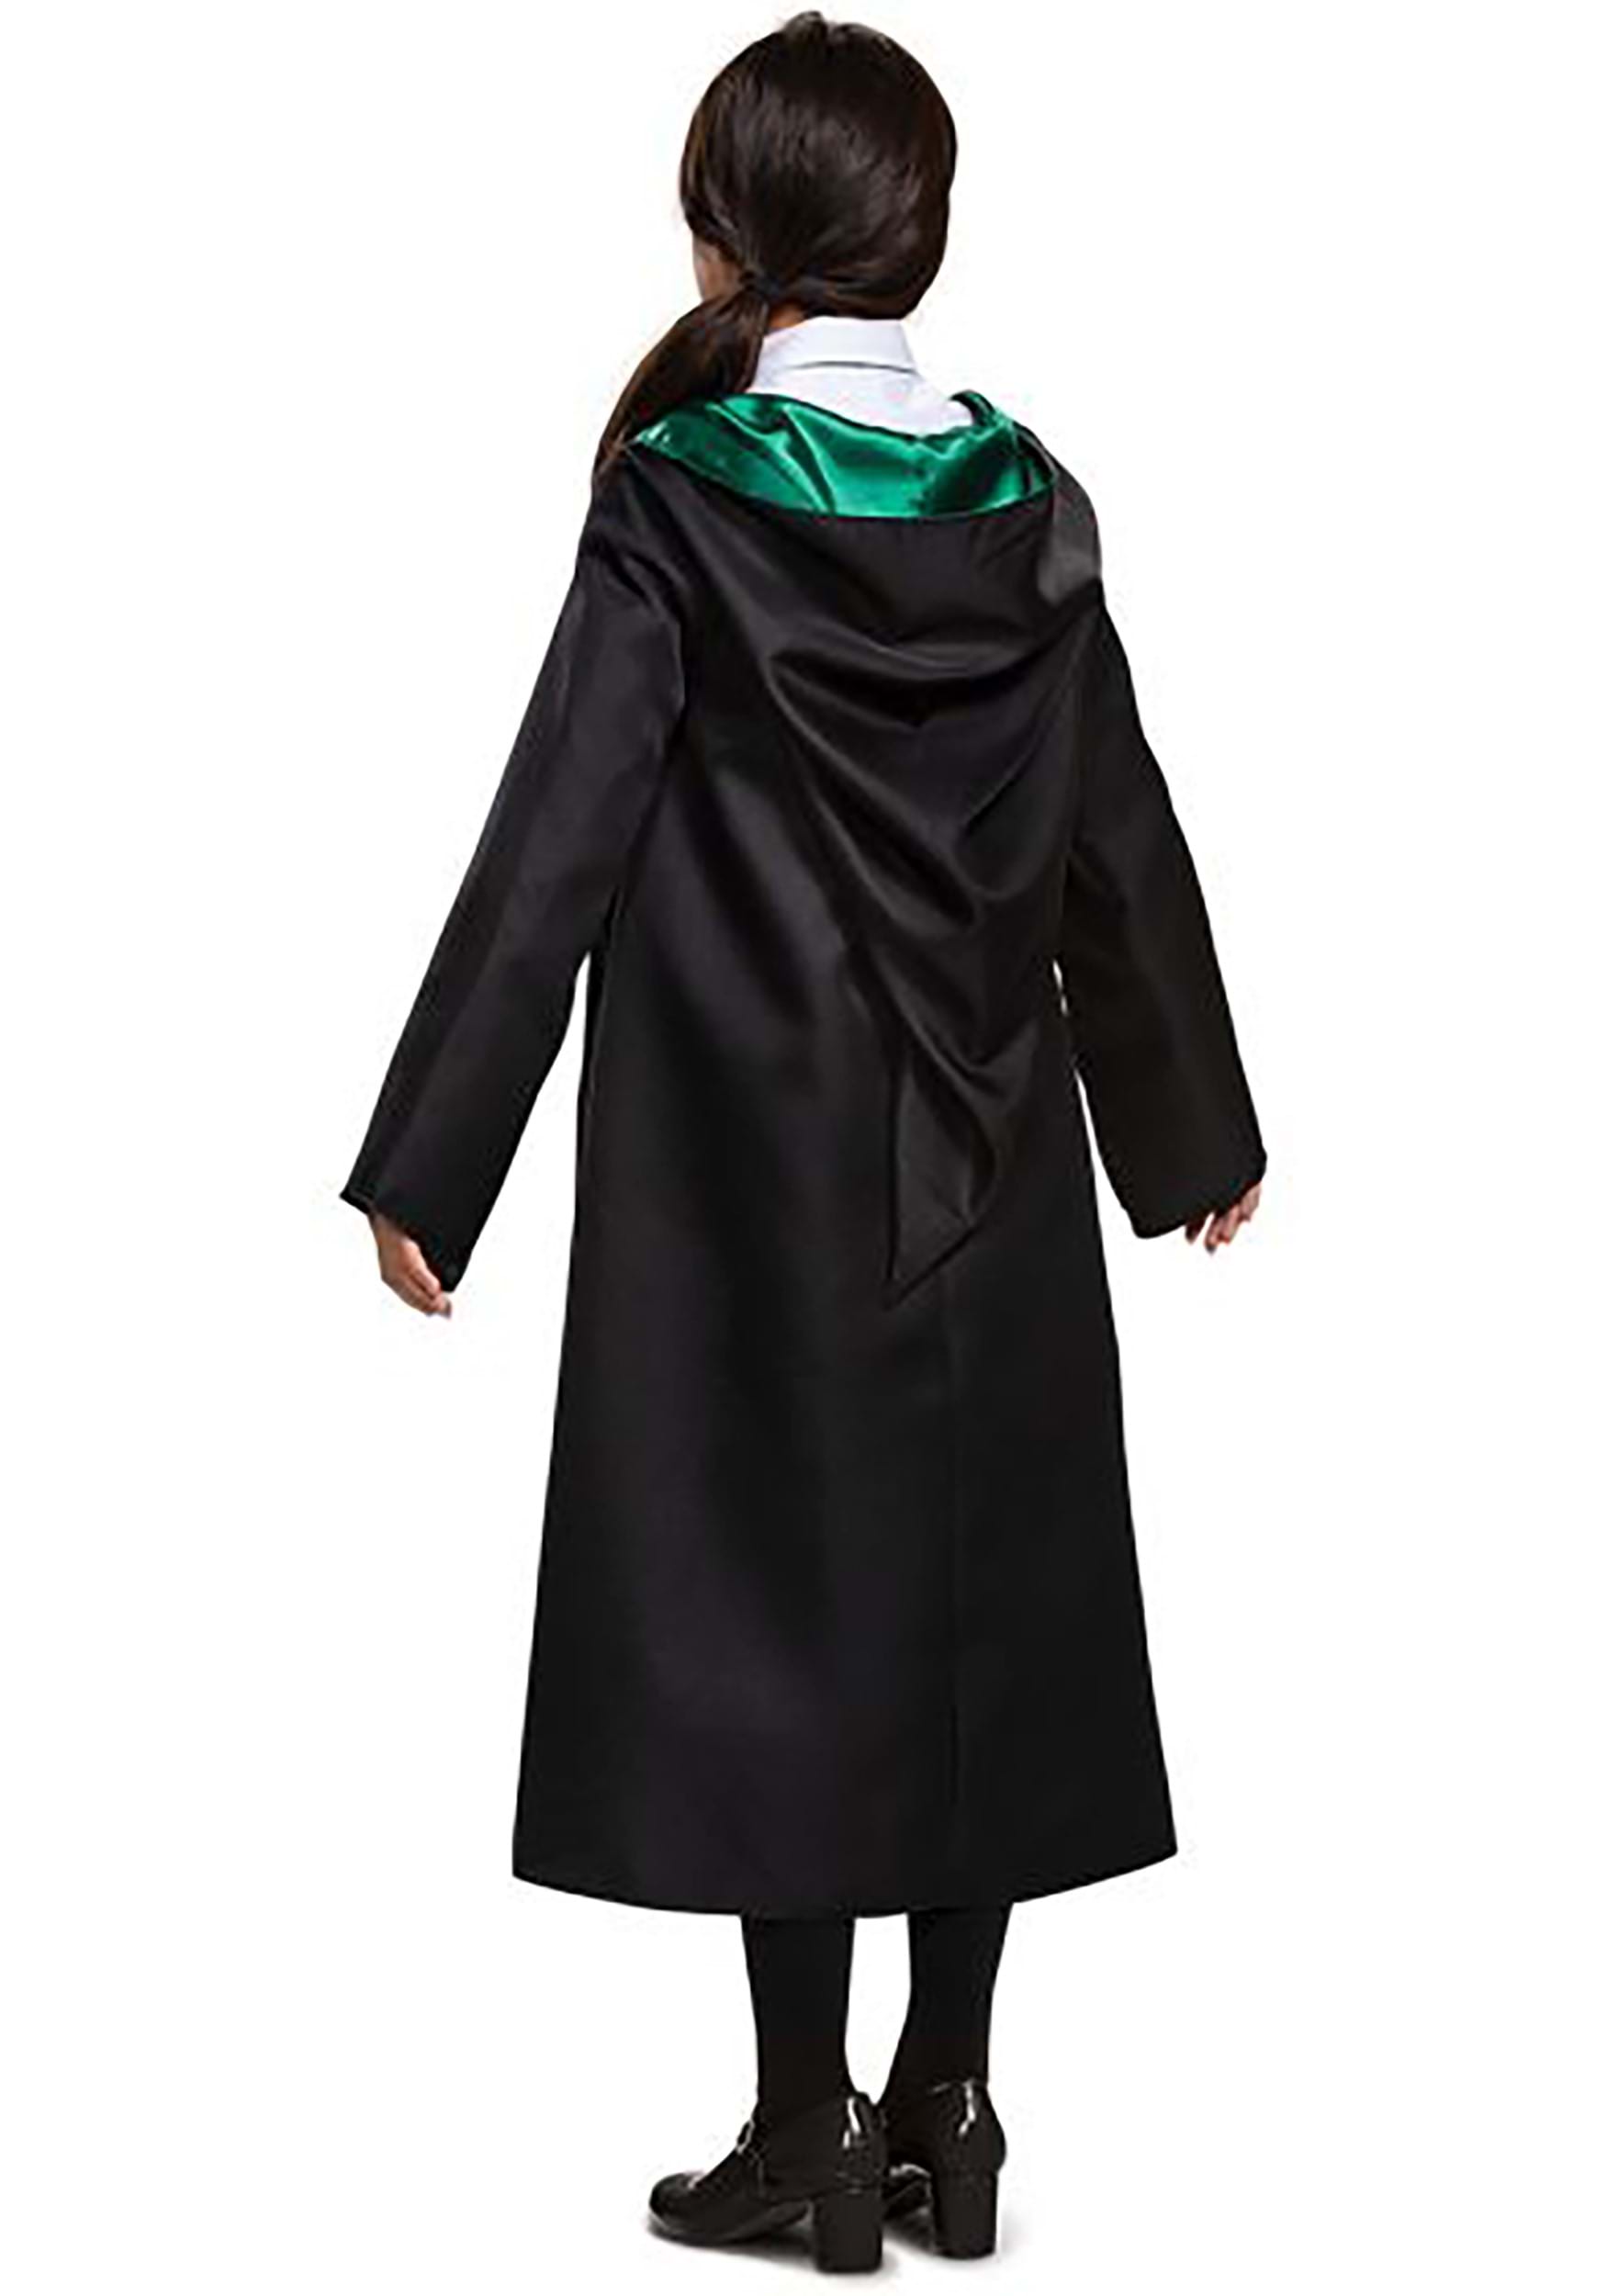 Slytherin Robe Deluxe Tween/Adult Costume 